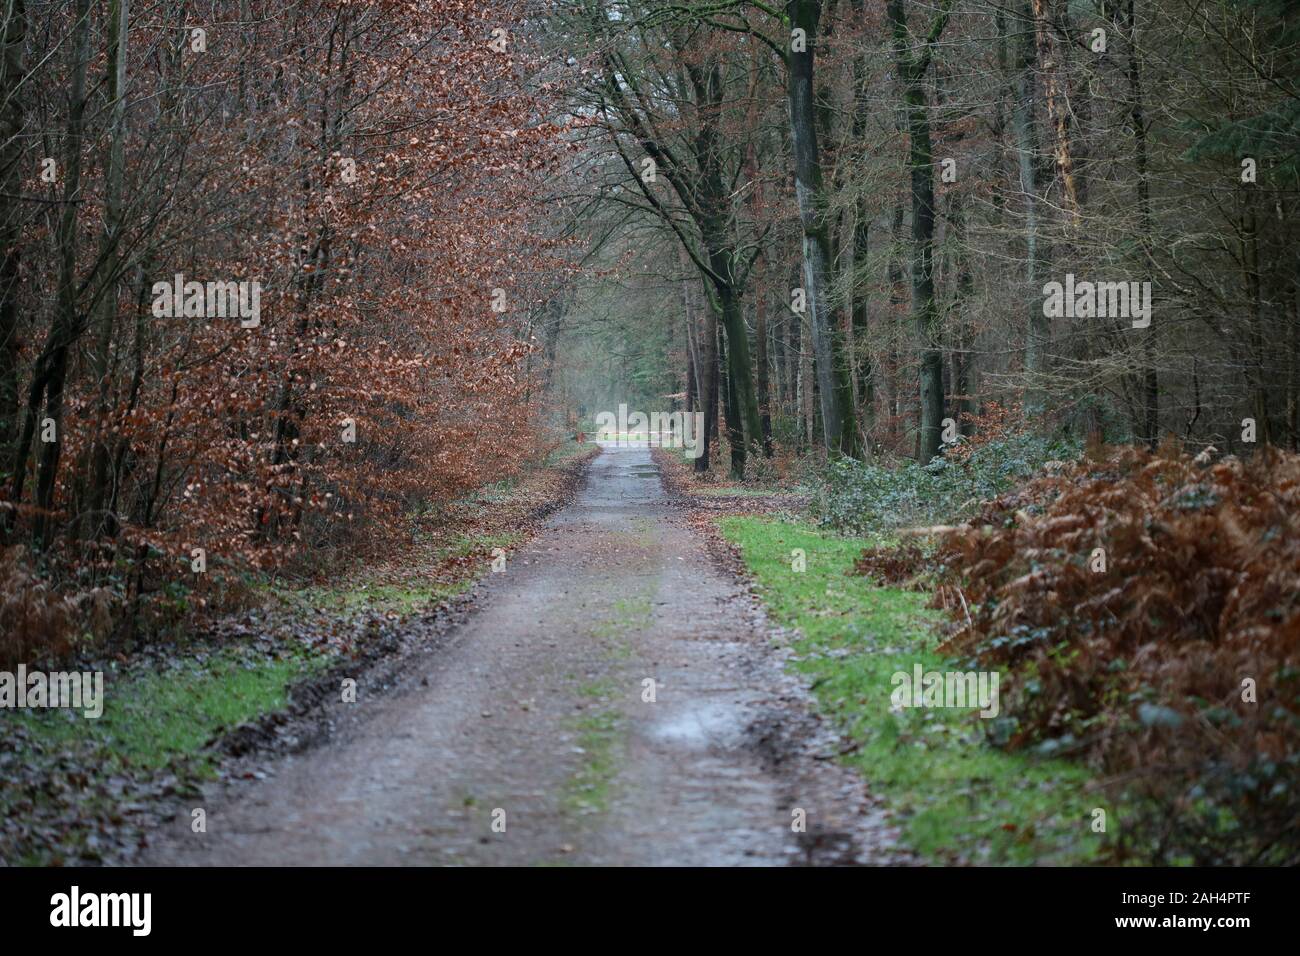 Forststraßen Hintergrund hohe Qualität 50 Megapixel Drucke Stockfoto